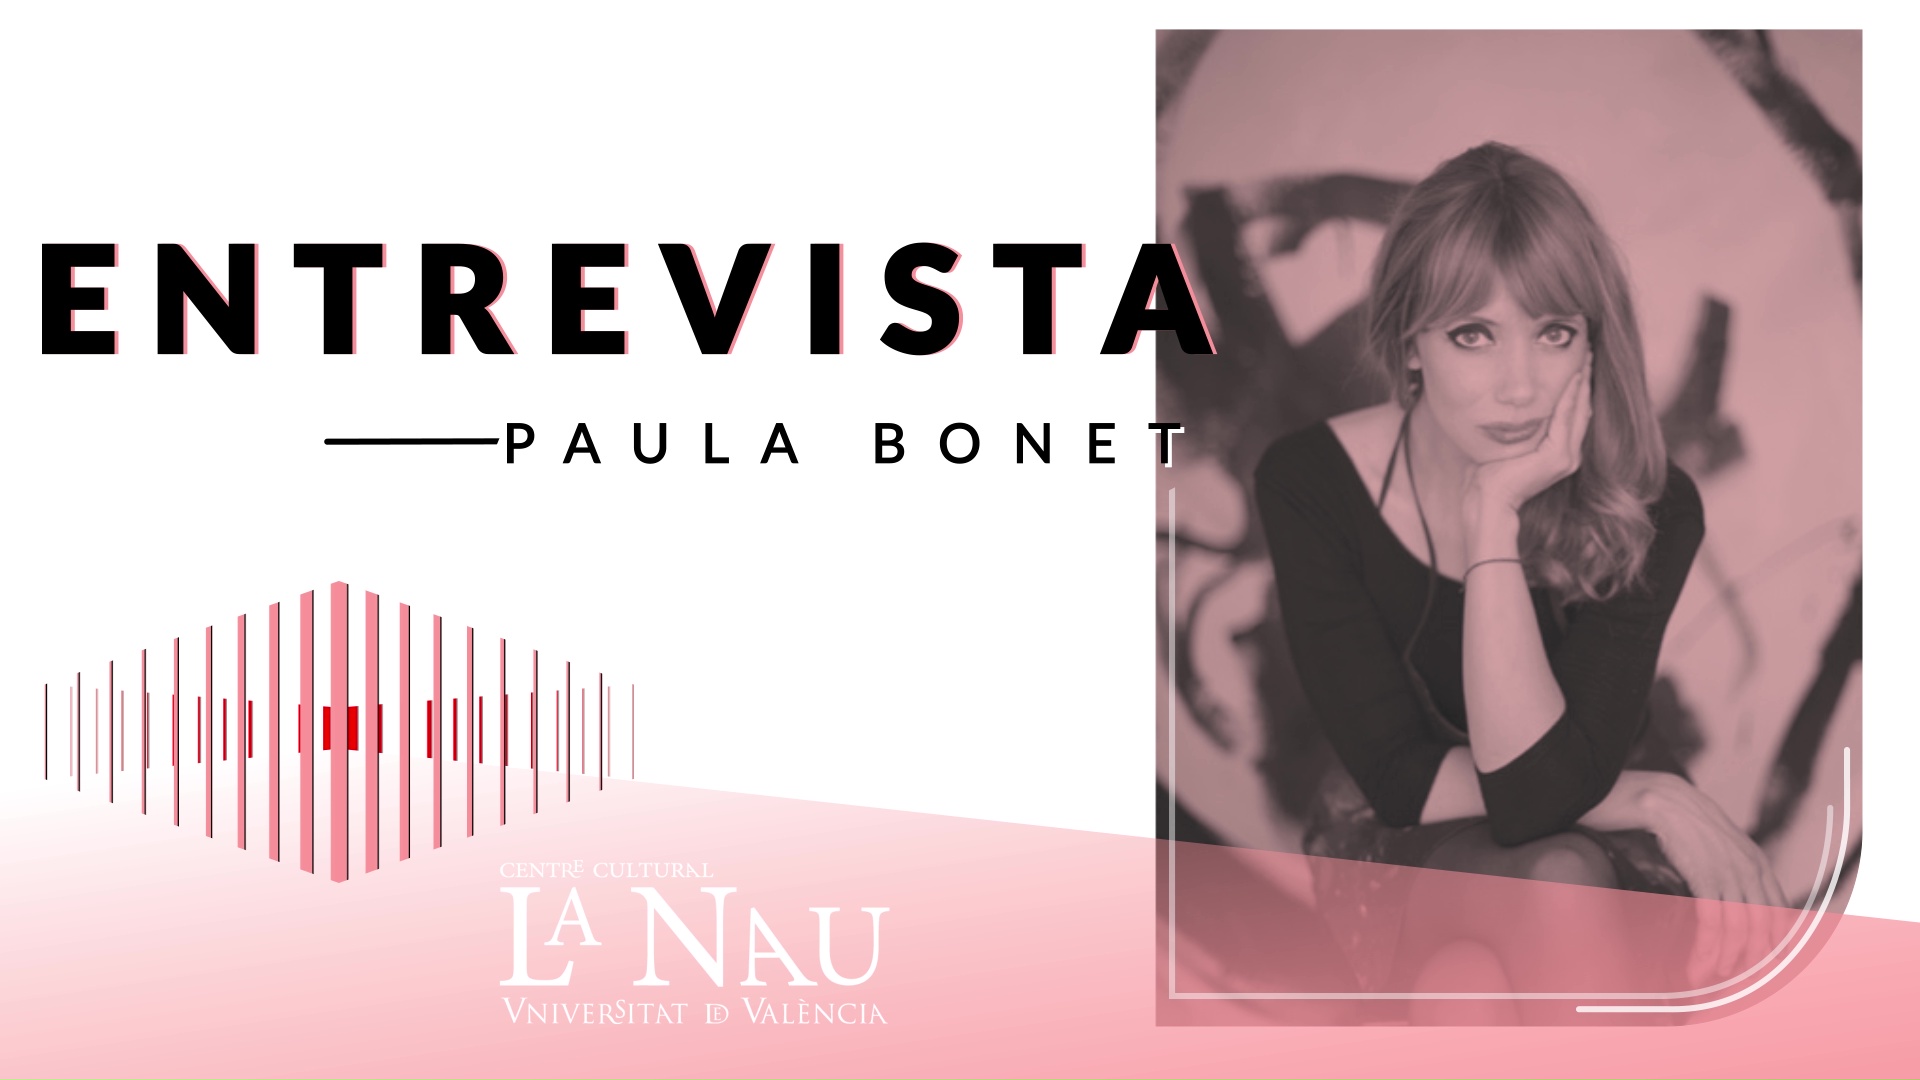 Entrevista a La Nau. Paula Bonet